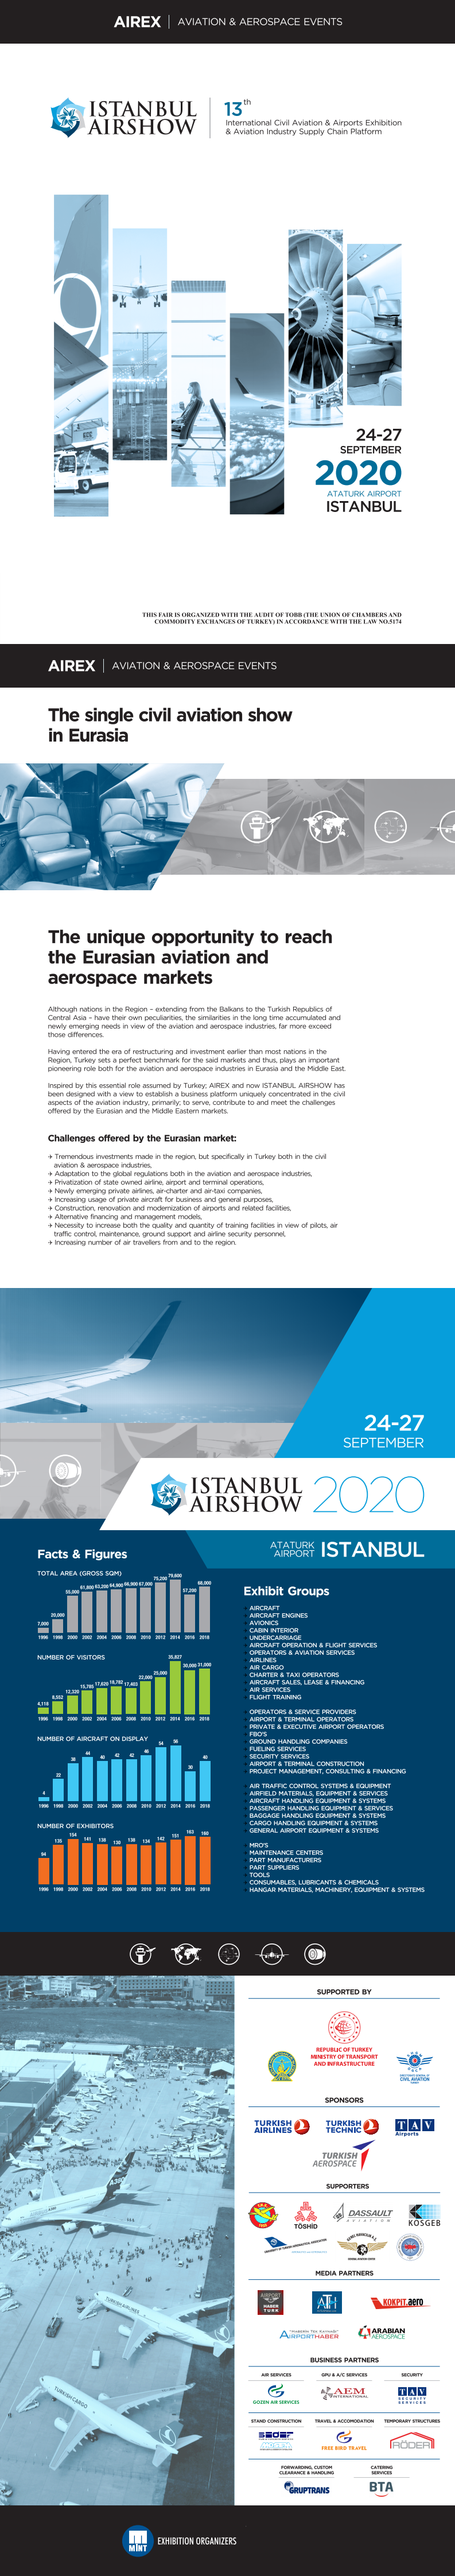 土耳其伊斯坦布尔机场设施展览会Airex